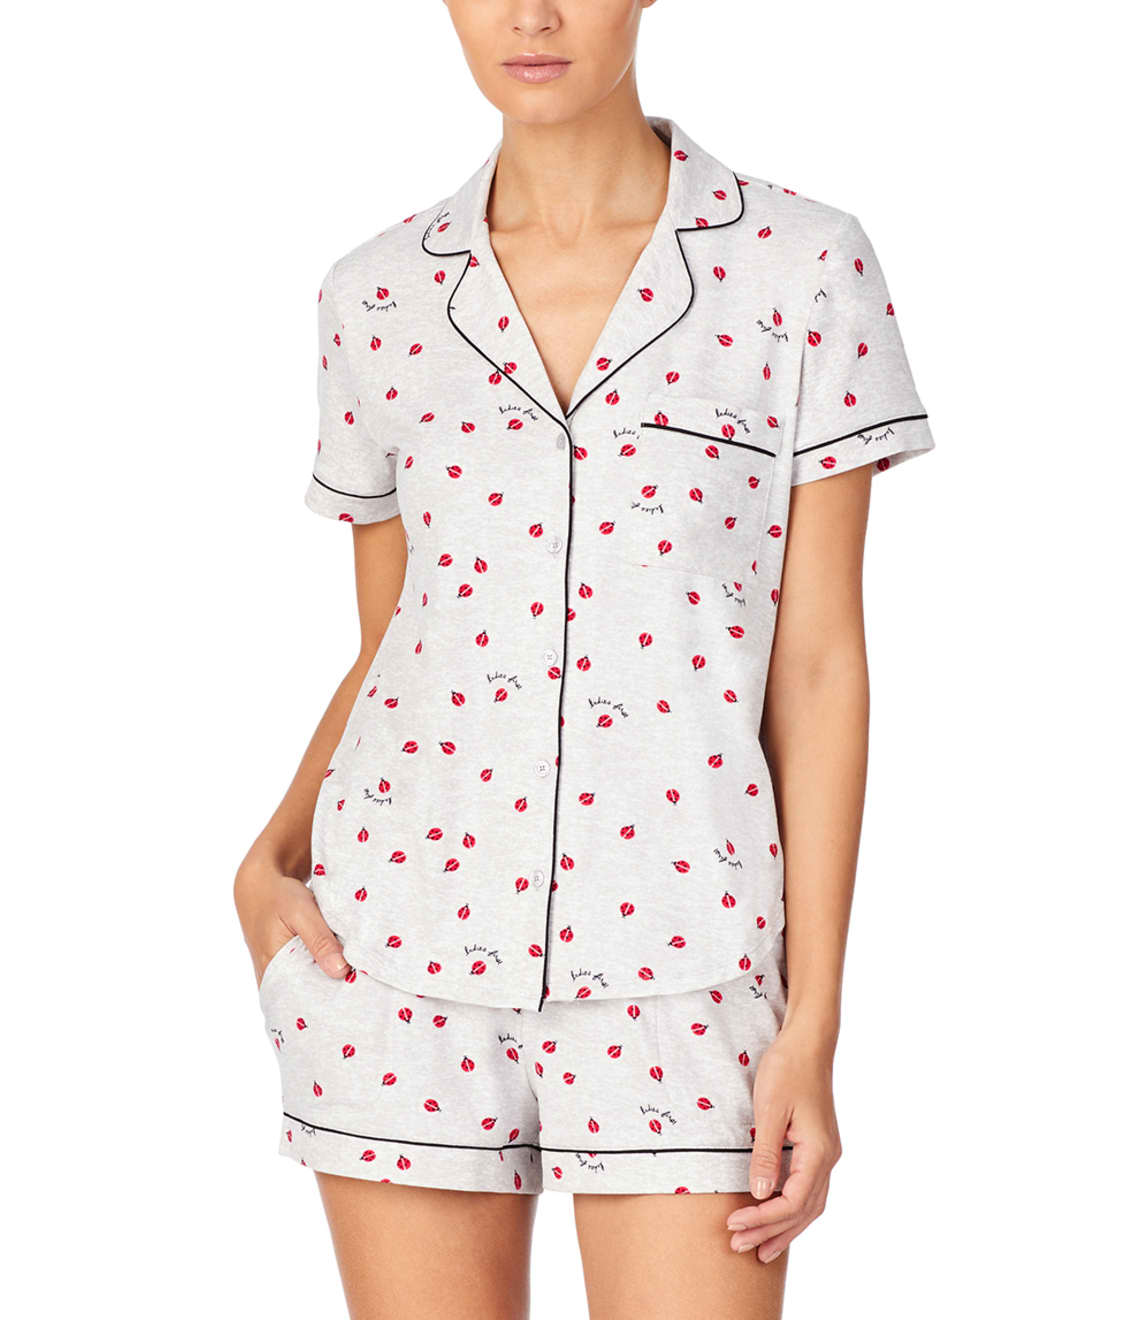 kate spade new york Ladybug Jersey Knit Pajama Set & Reviews | Bare  Necessities (Style KS11953)